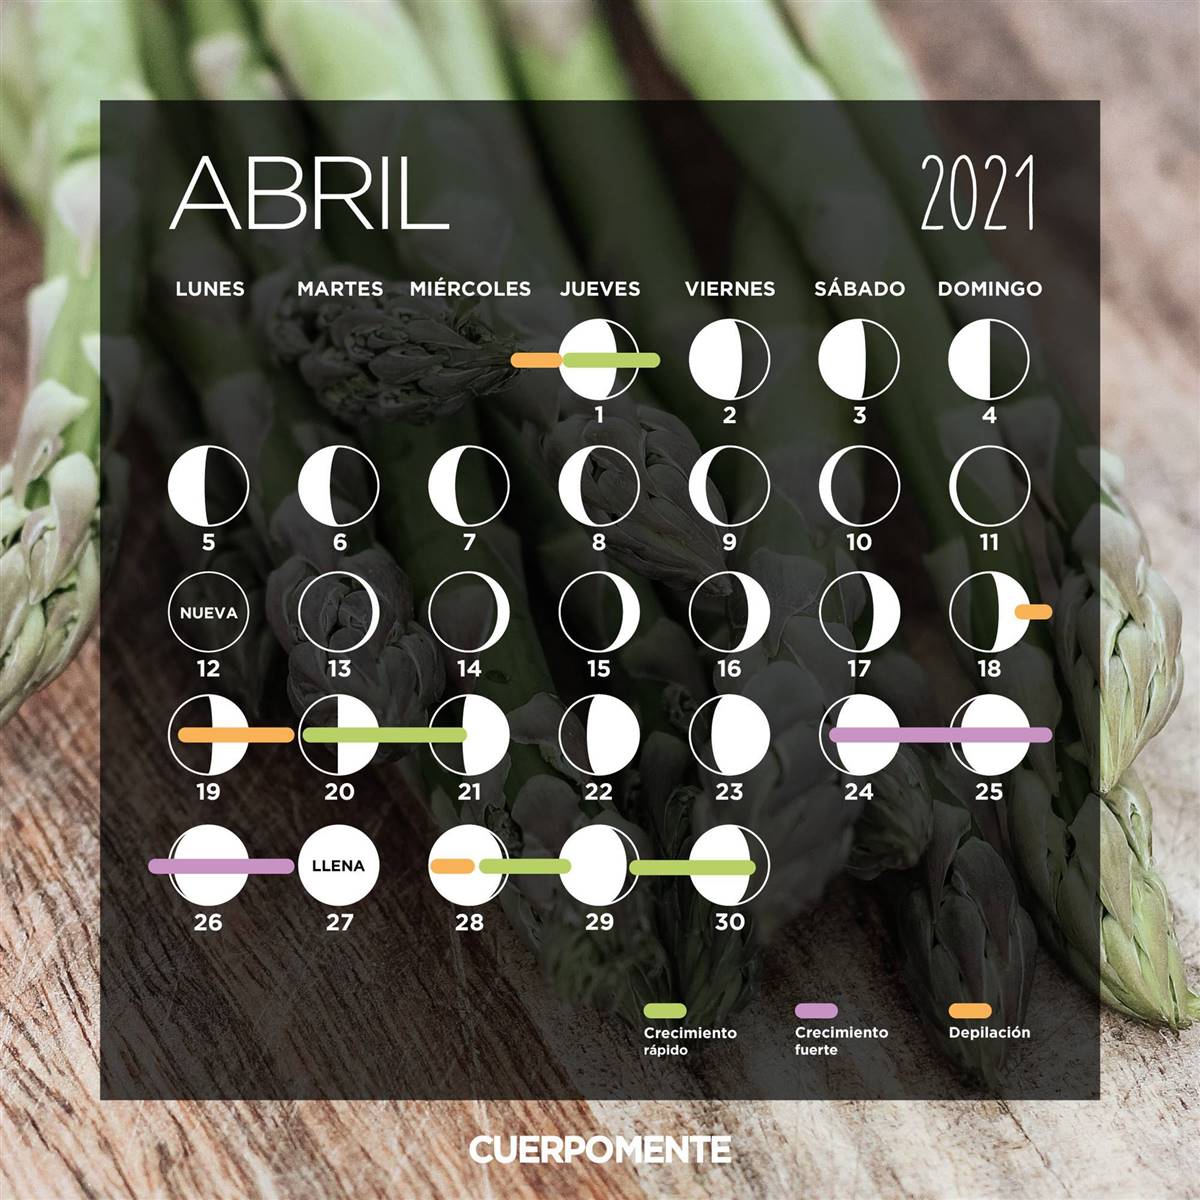 Sintético 94+ Foto Calendario Lunar Julio 2021 Para Cortarse El Cabello